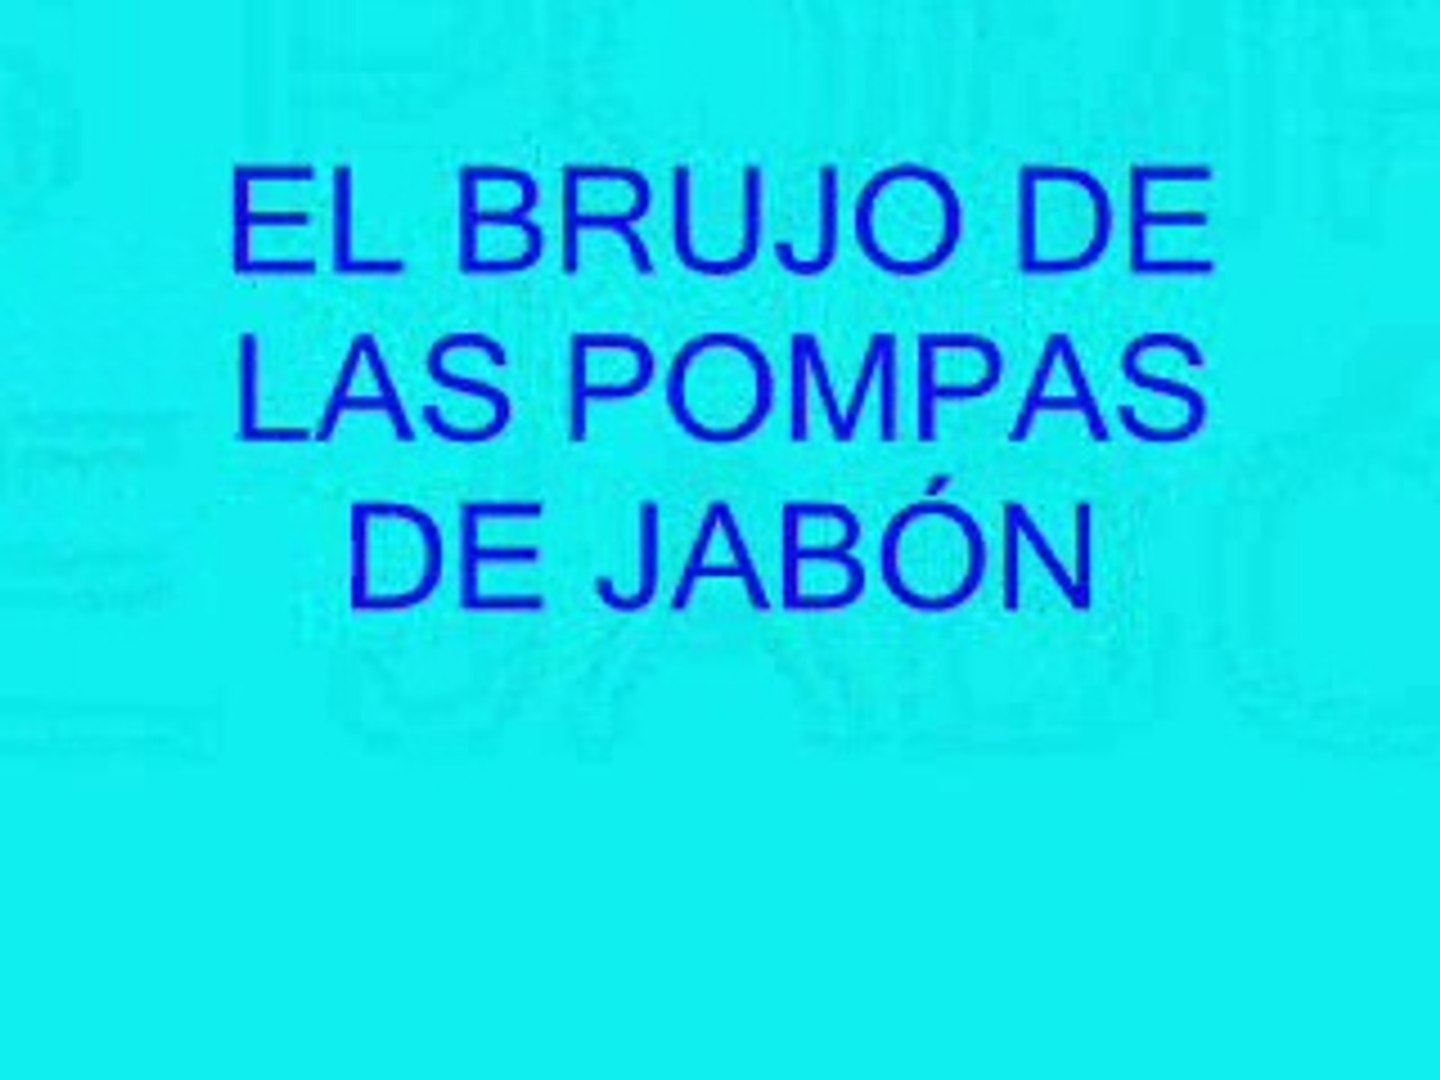 POMPAS DE JABON EN UN CUENTO - Vídeo Dailymotion